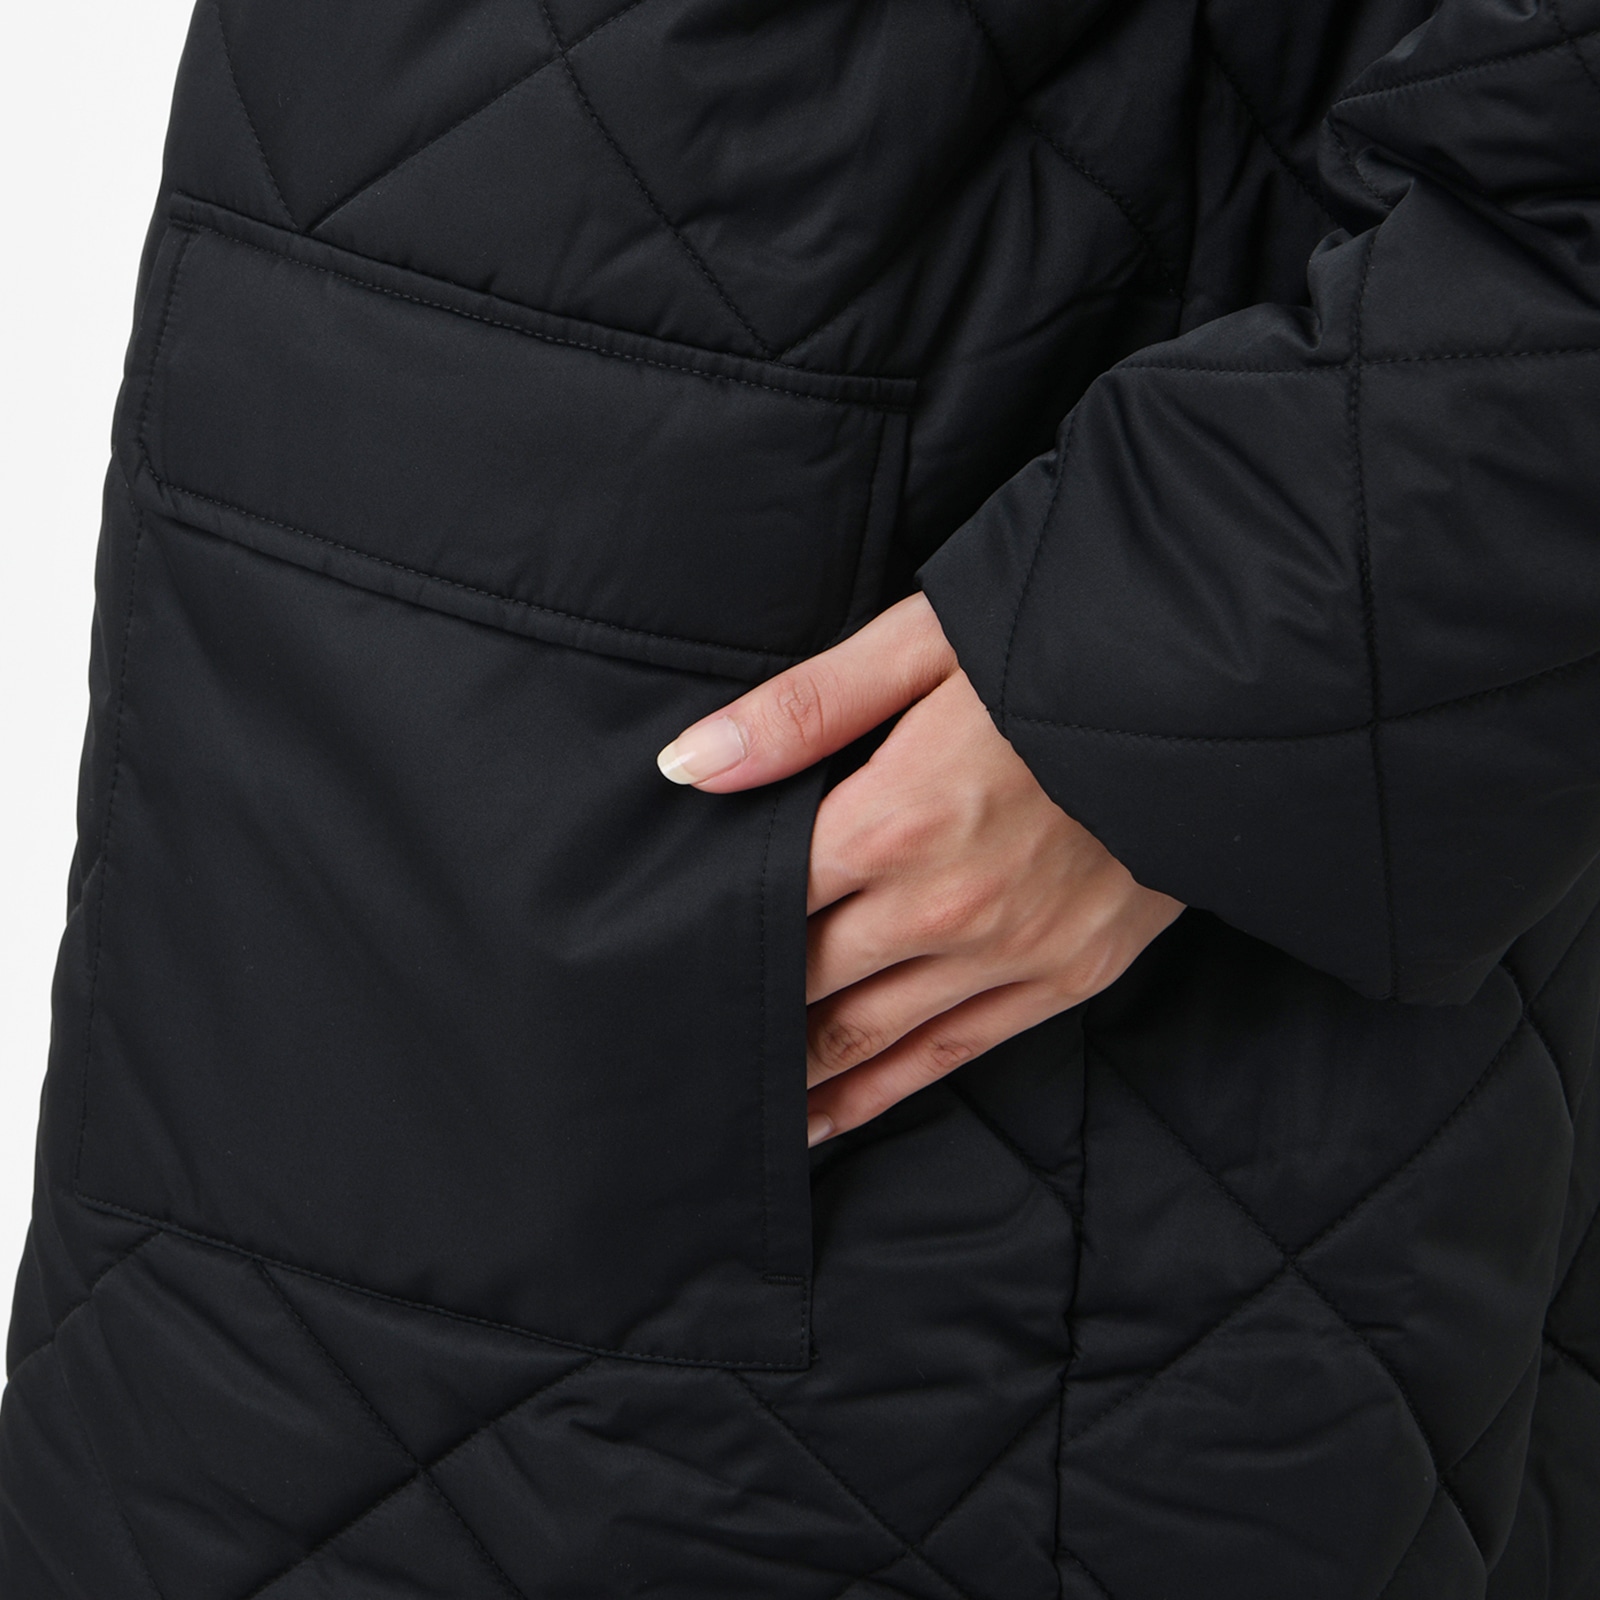 MFO 여성 퀼팅 재킷